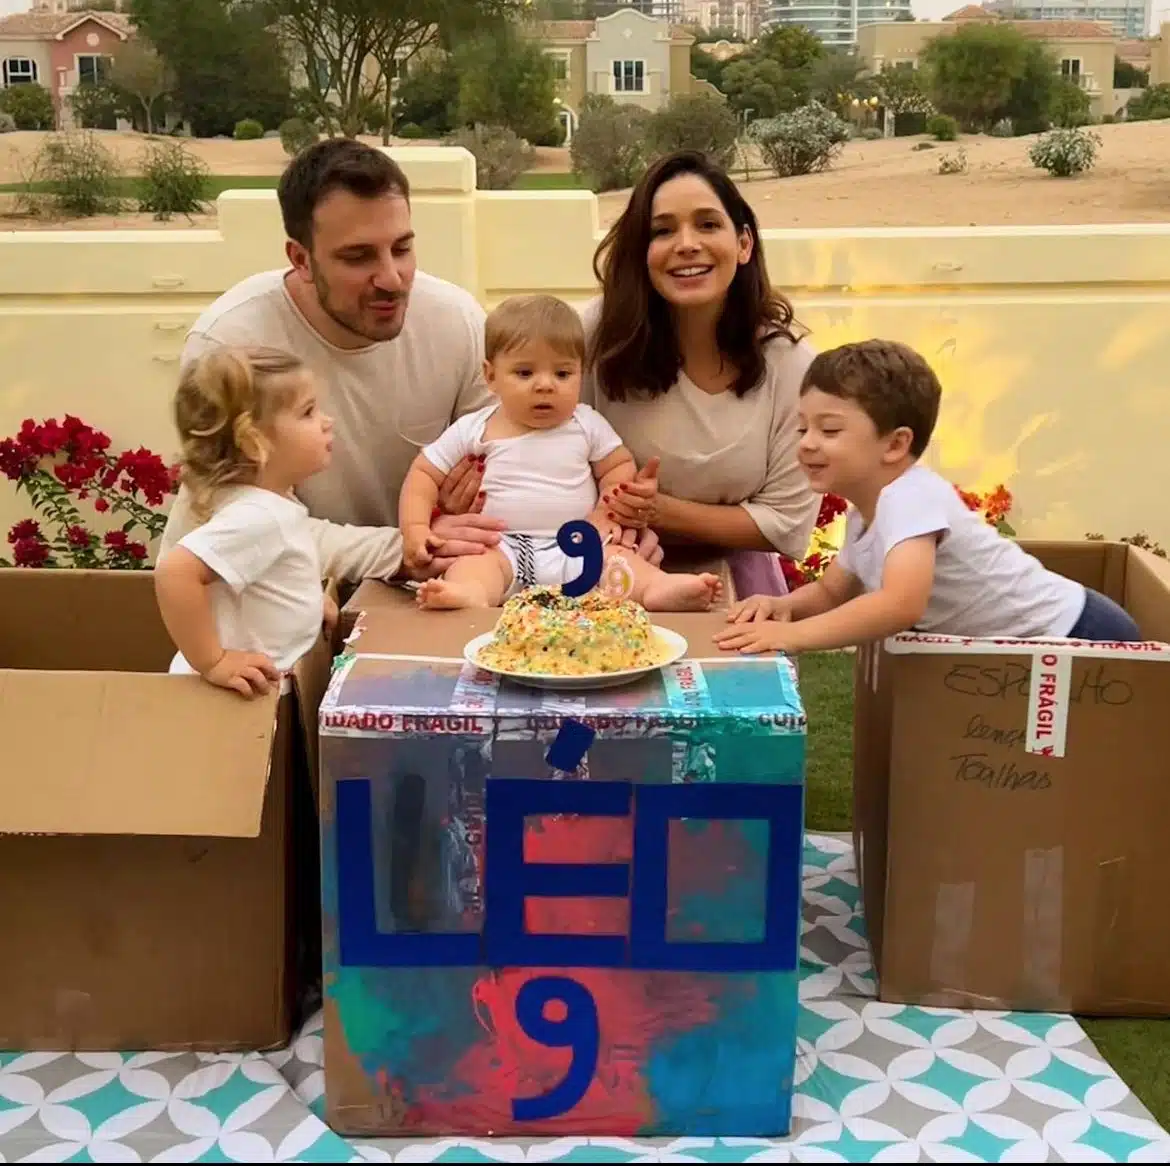 Sabrina Petraglia comemora os 9 meses de seu bebê na nova casa em Dubai